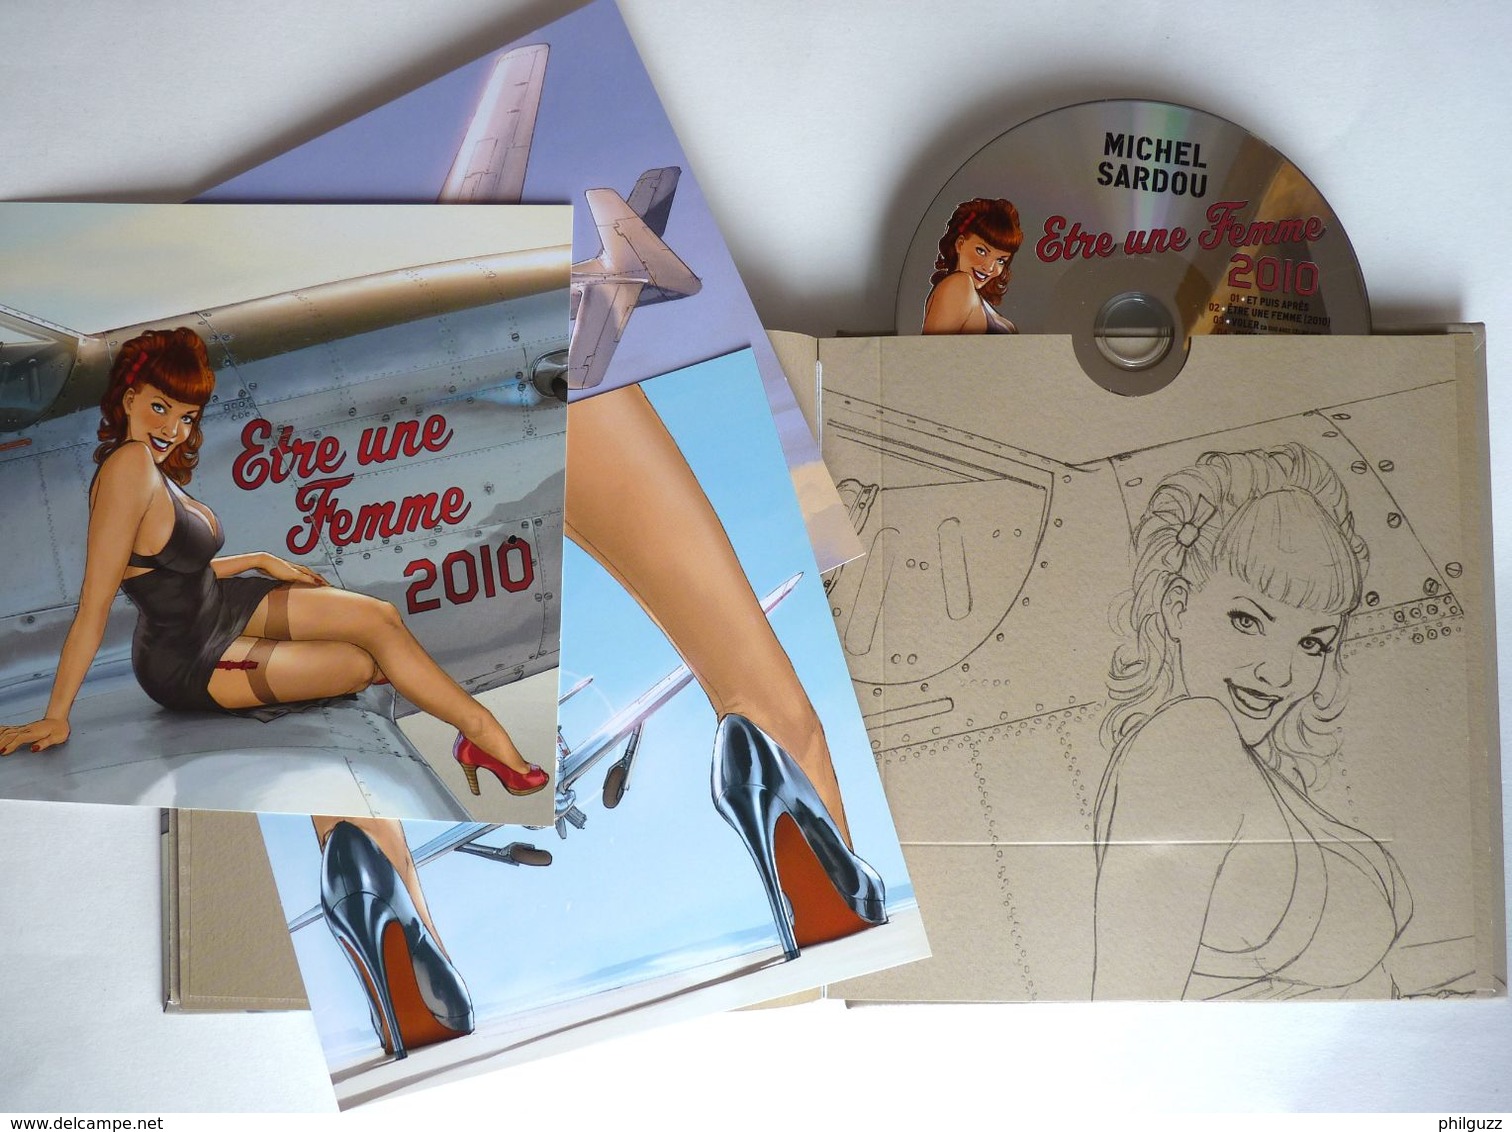 LIVRE CD COLLECTOR édition Limité ETRE UNE FEMME Michel SARDOU - HUGAULT 2010 AVEC 3 XL ET UN CD - Discos & CD